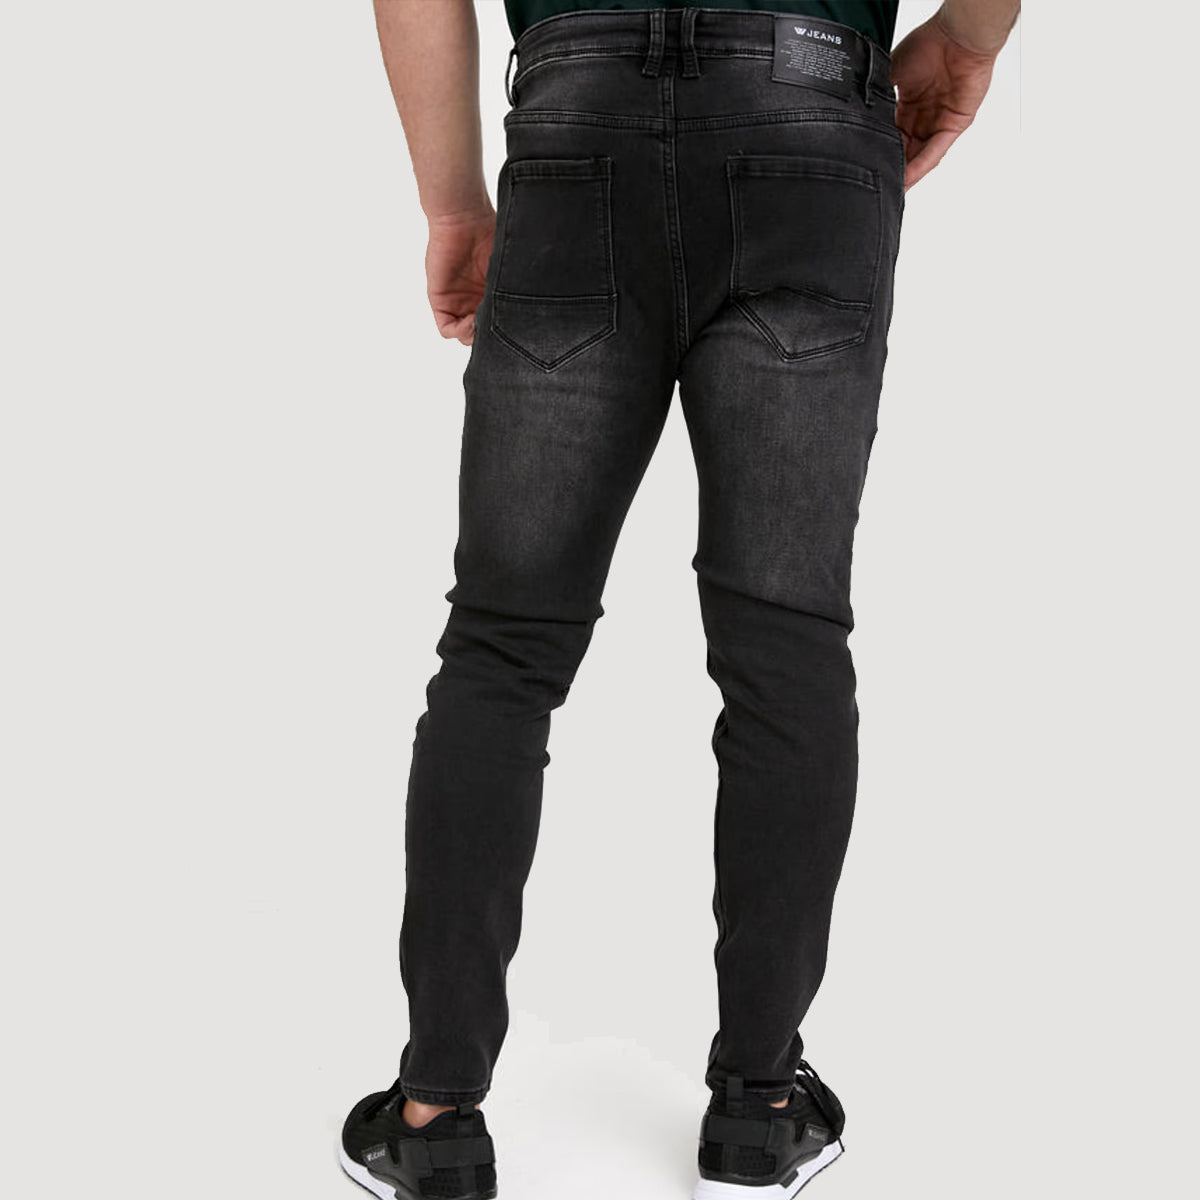 דבליו ג'ינס שחור משופשף לגבר-W Jeans-28-נאקו